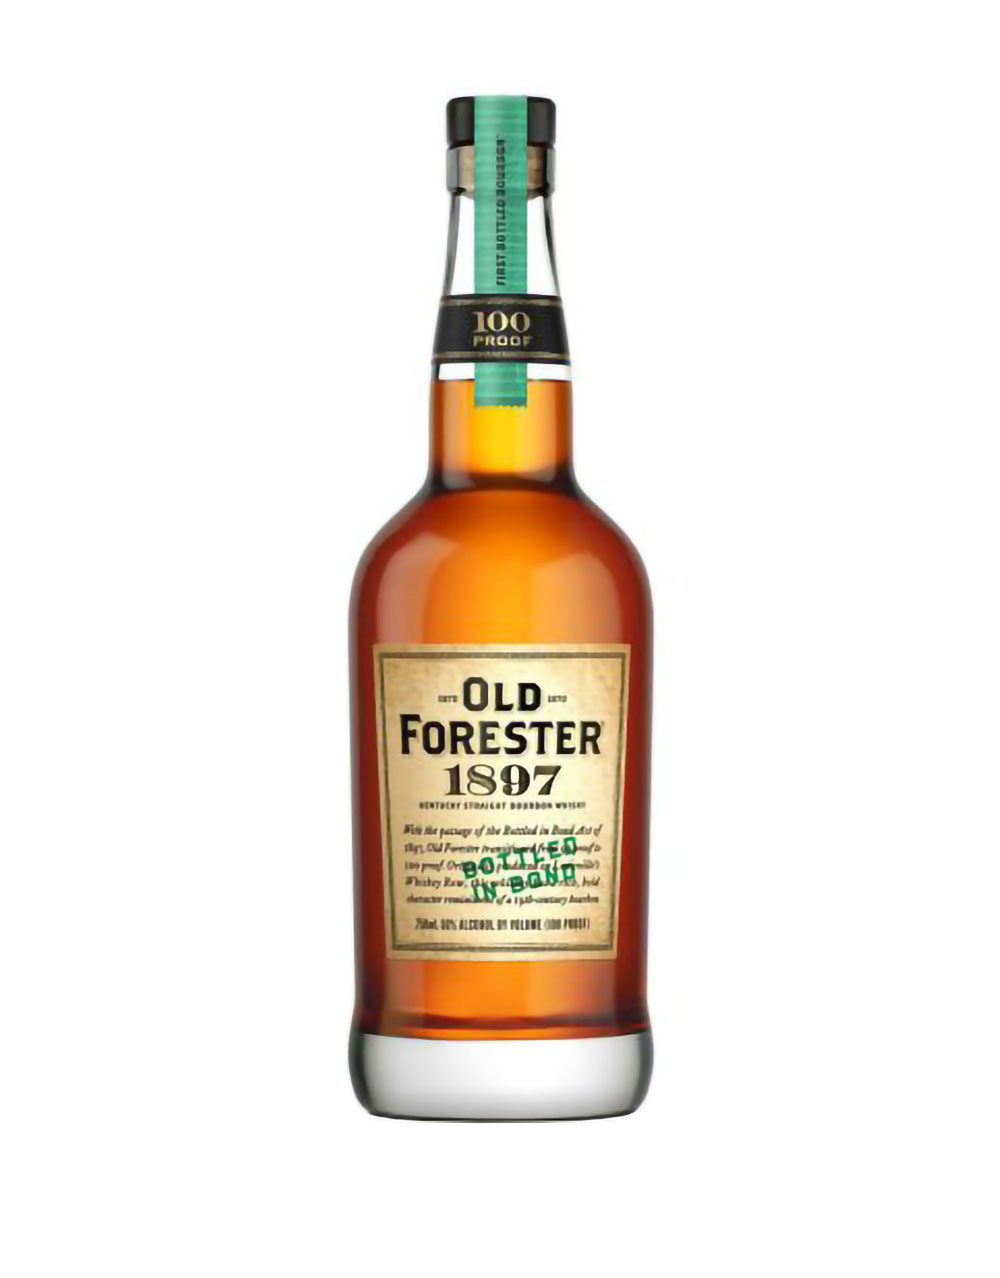 Old Forester 1897 Bottled in Bond Straight Bourbon Whiskey